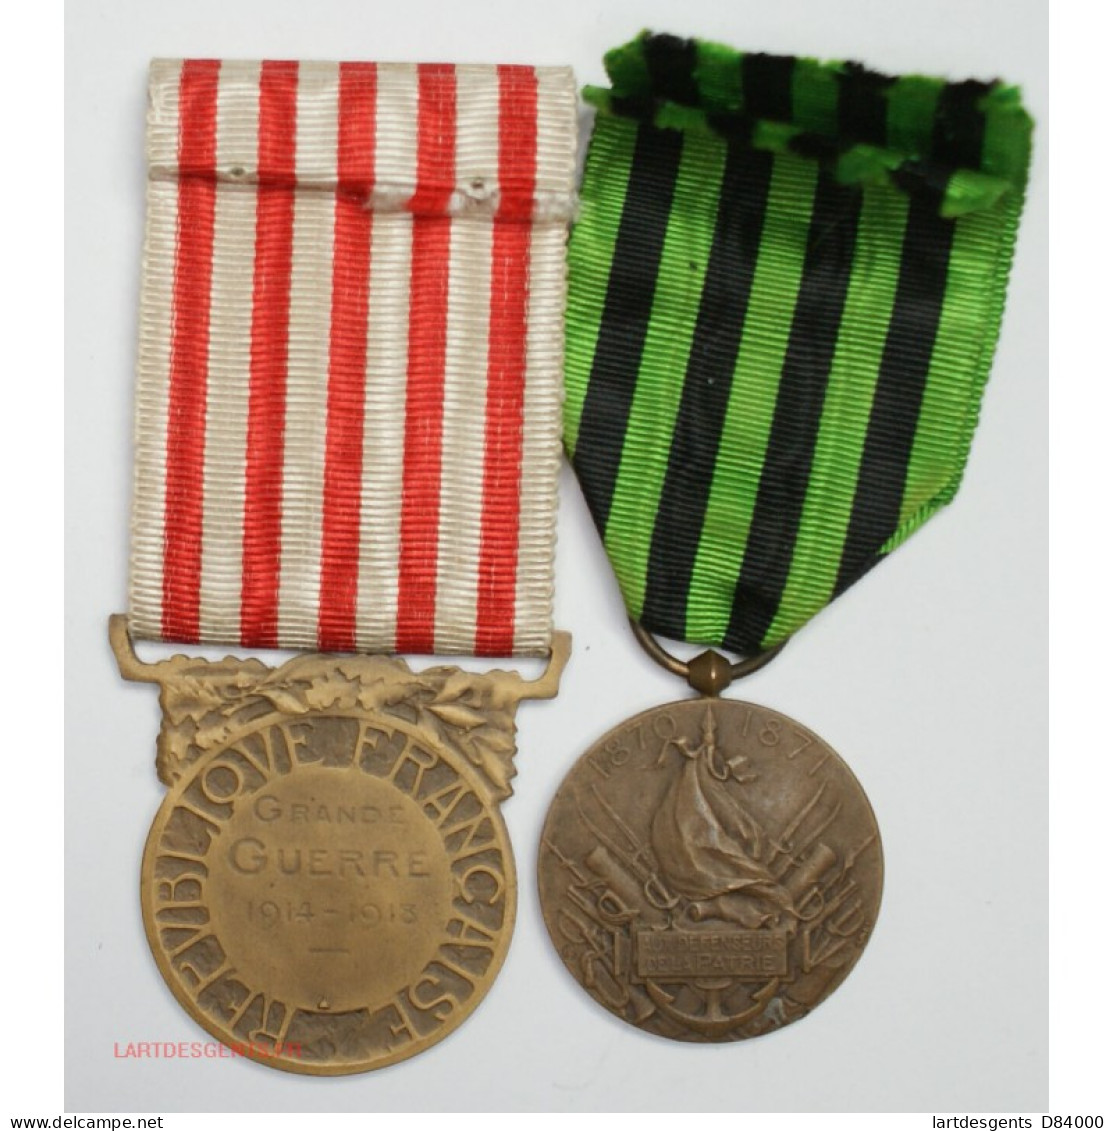 MEDAILLE De La GRANDE GUERRE 1914 - 1918 WW1 + Défenseurs De La Patrie 1870-71 - Monarchia / Nobiltà